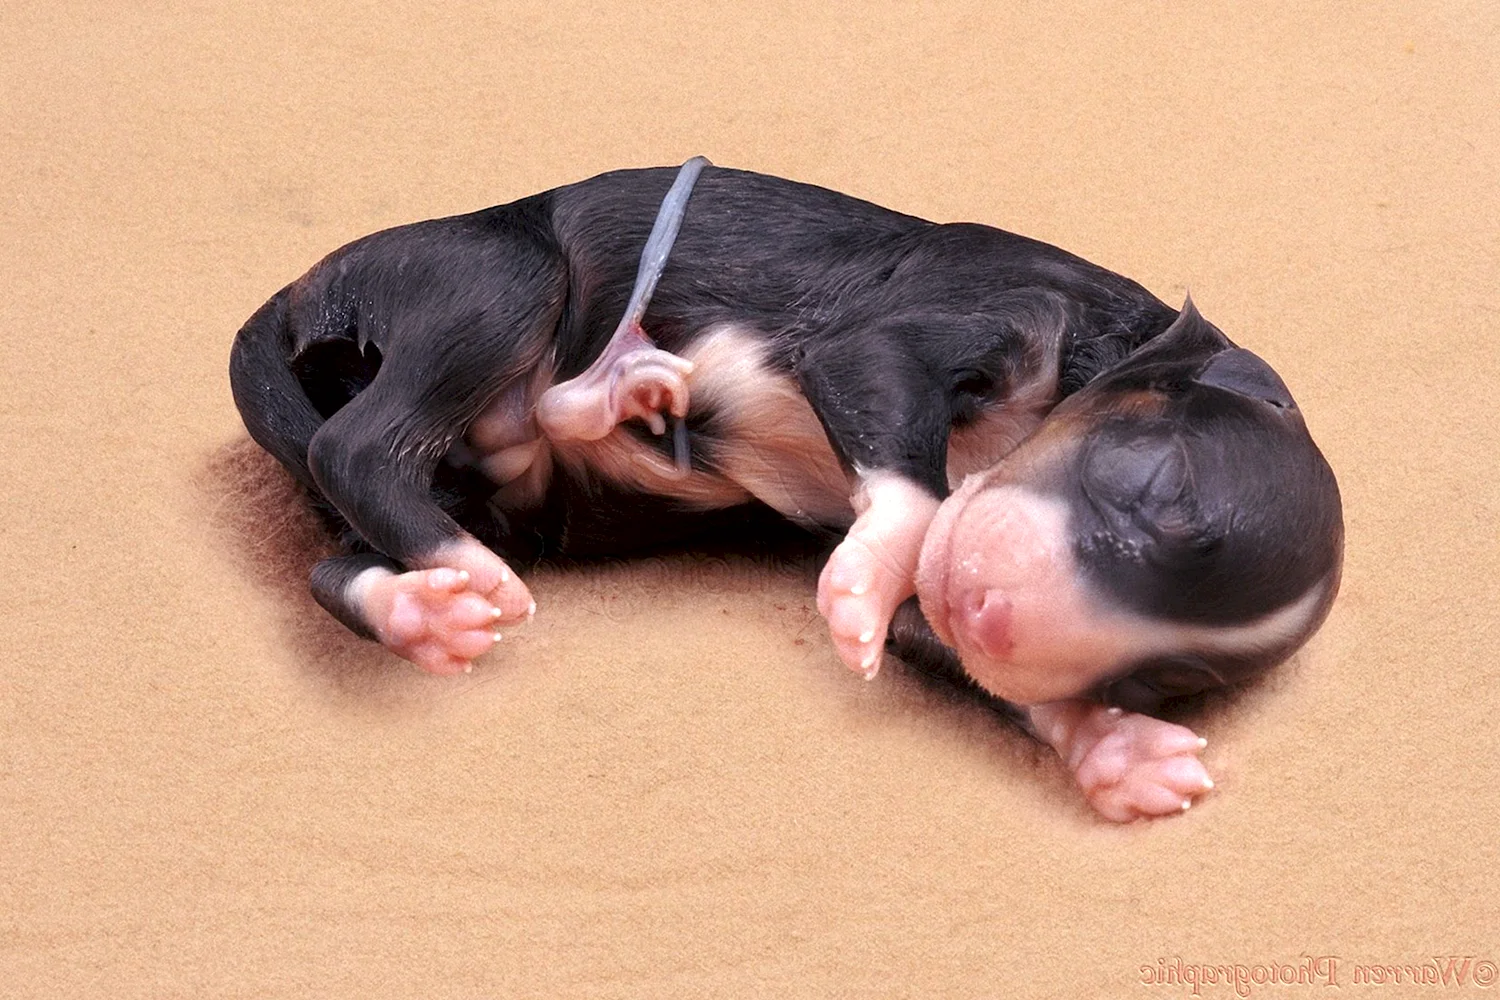 Новорожденные щенки дворняжки